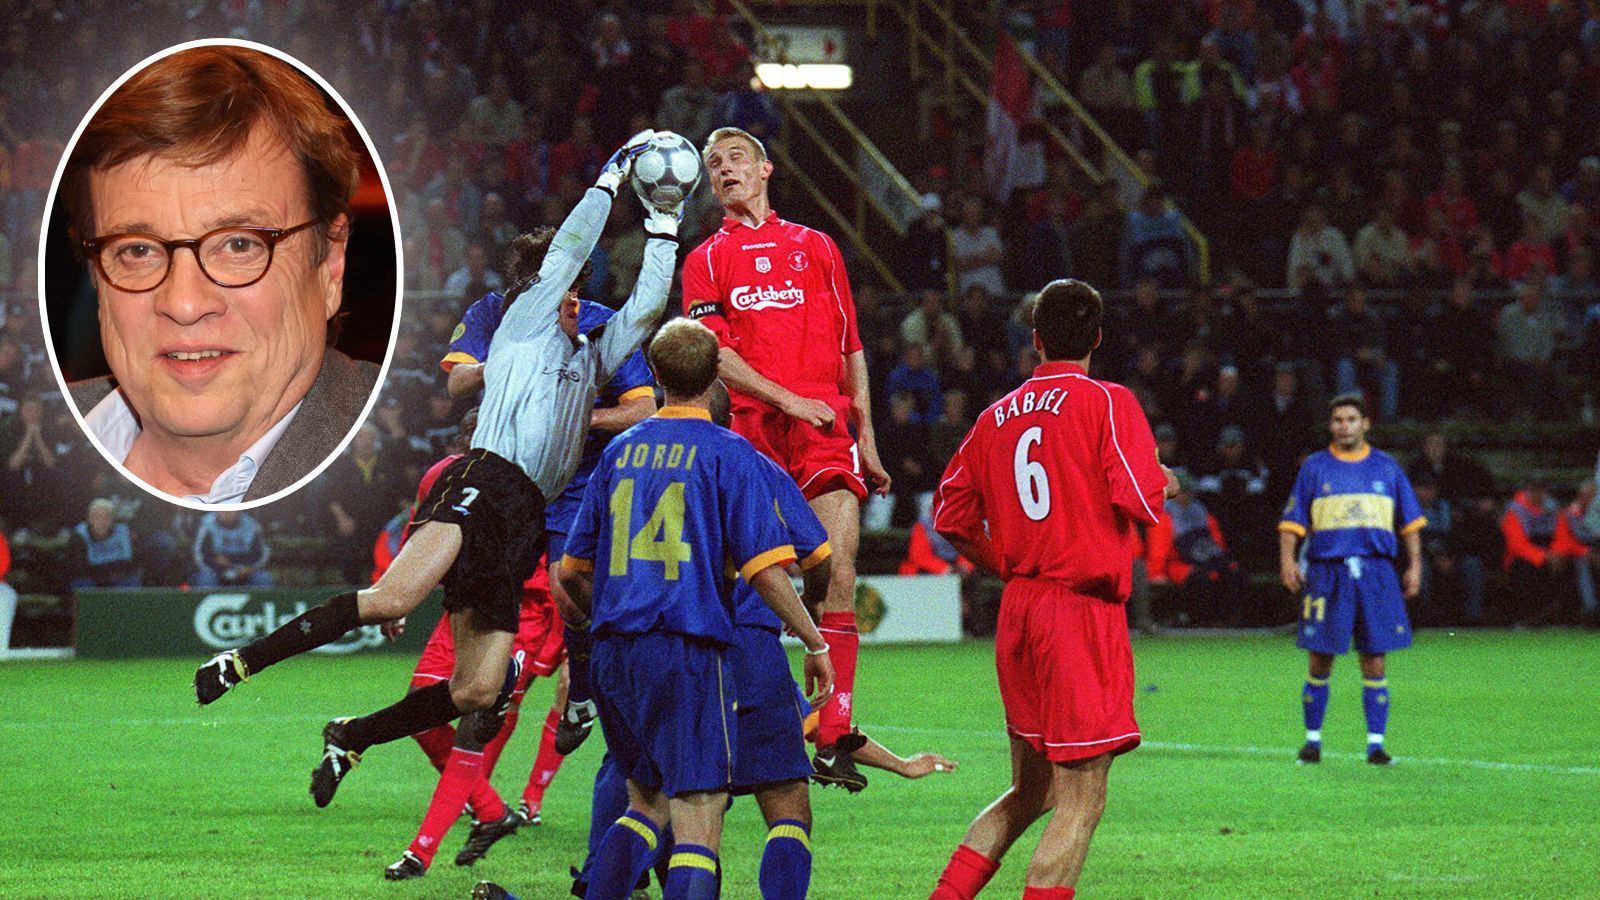 
                <strong>Bela Rethys beste Sprüche</strong><br>
                "Liverpool schlägt Alaves durch Golden Eigentor mit 5:4." - Rethy nach dem Uefa-Cup-Finale 2001 zwischen dem FC Liverpool und Deportivo Alaves. 
              